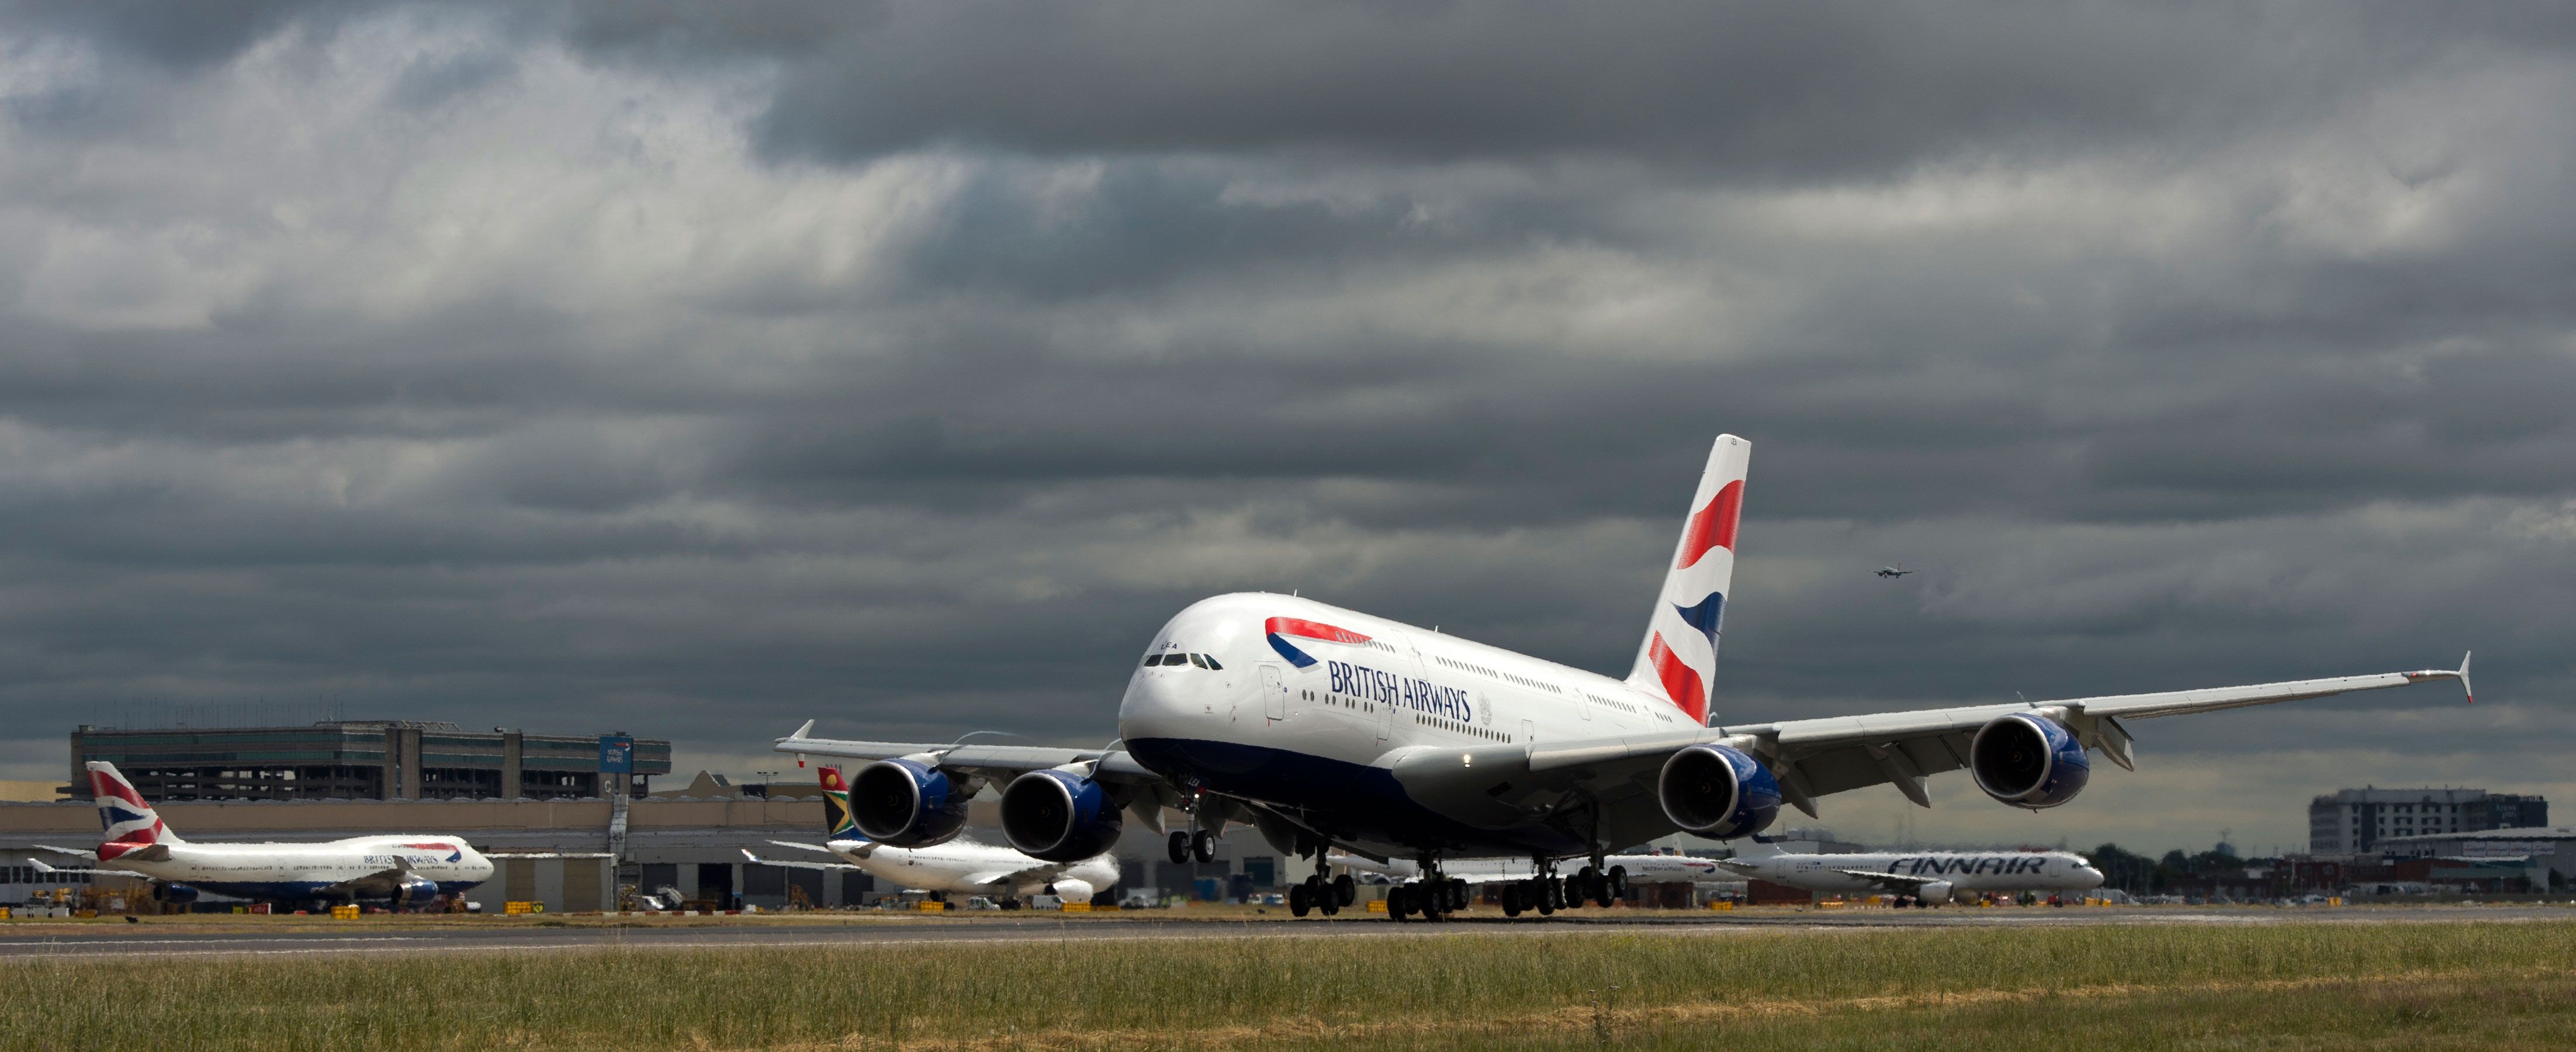 Airbus, British Airways, Heathrow and NATS partner for 'Quieter